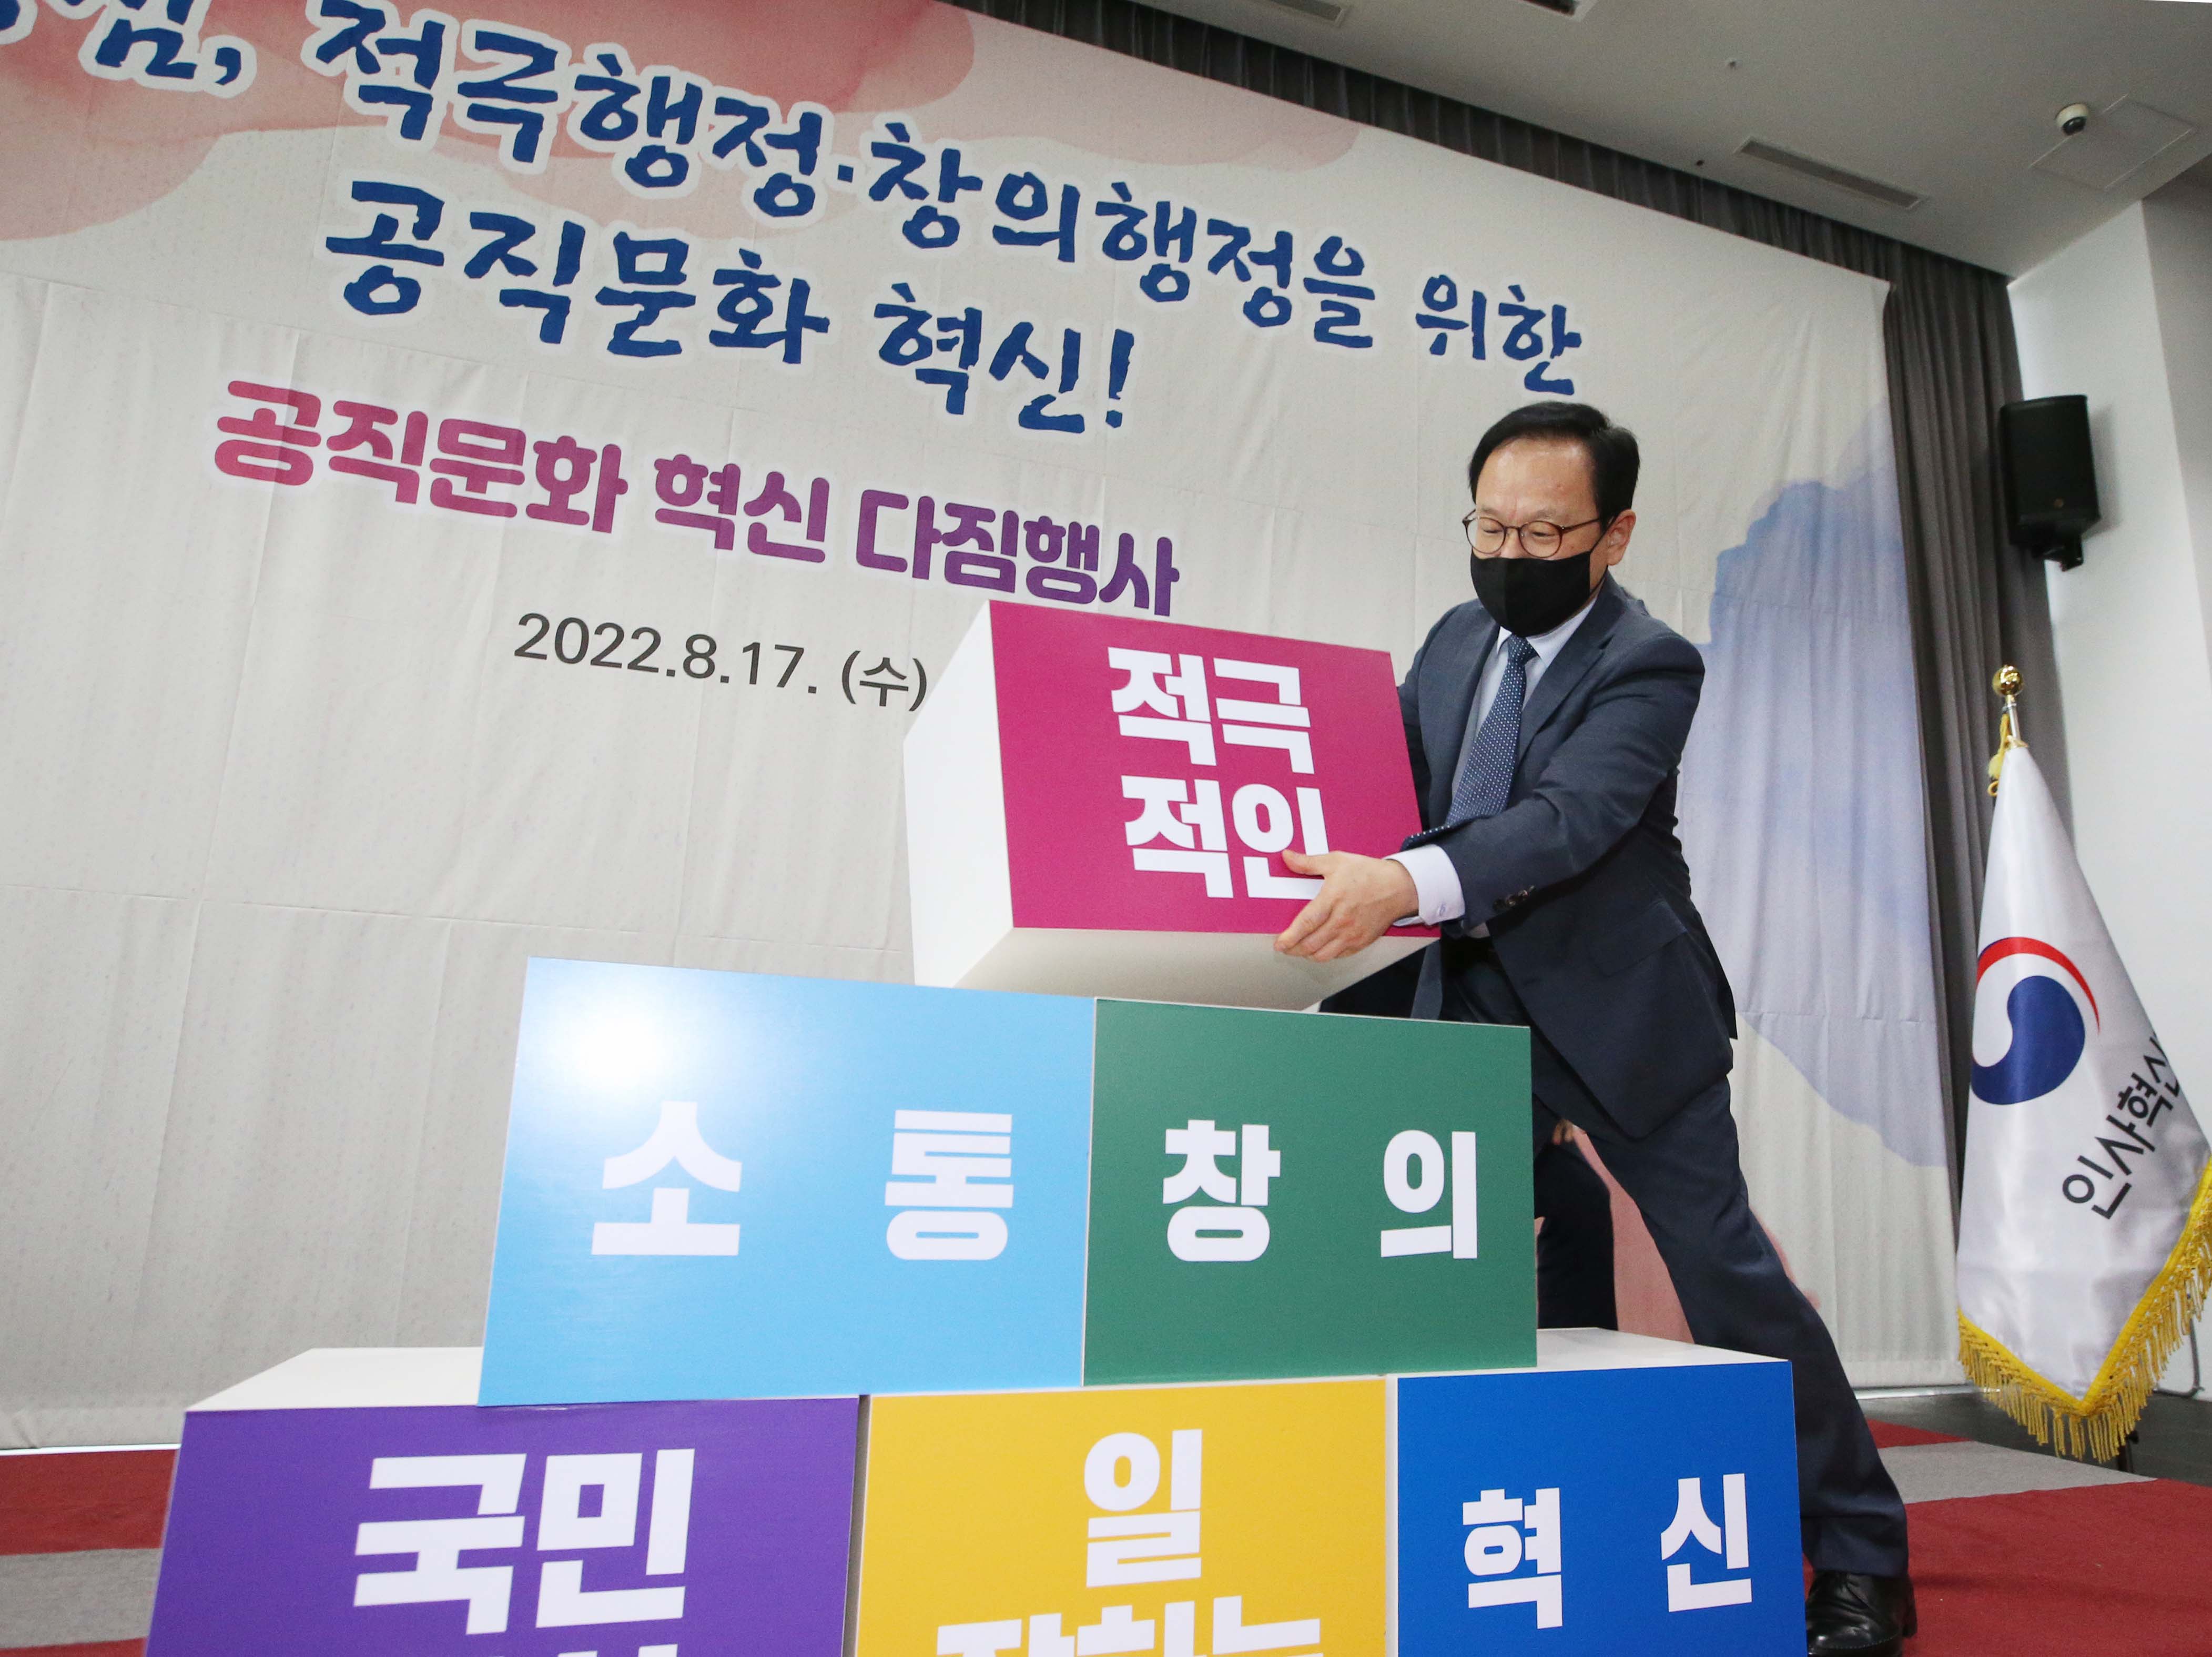 김승호 인사혁신처장이 '공직문화 혁신 다짐행사'에서 적극적인 상자를 쌓아 올리는  퍼포먼스를 하는 모습